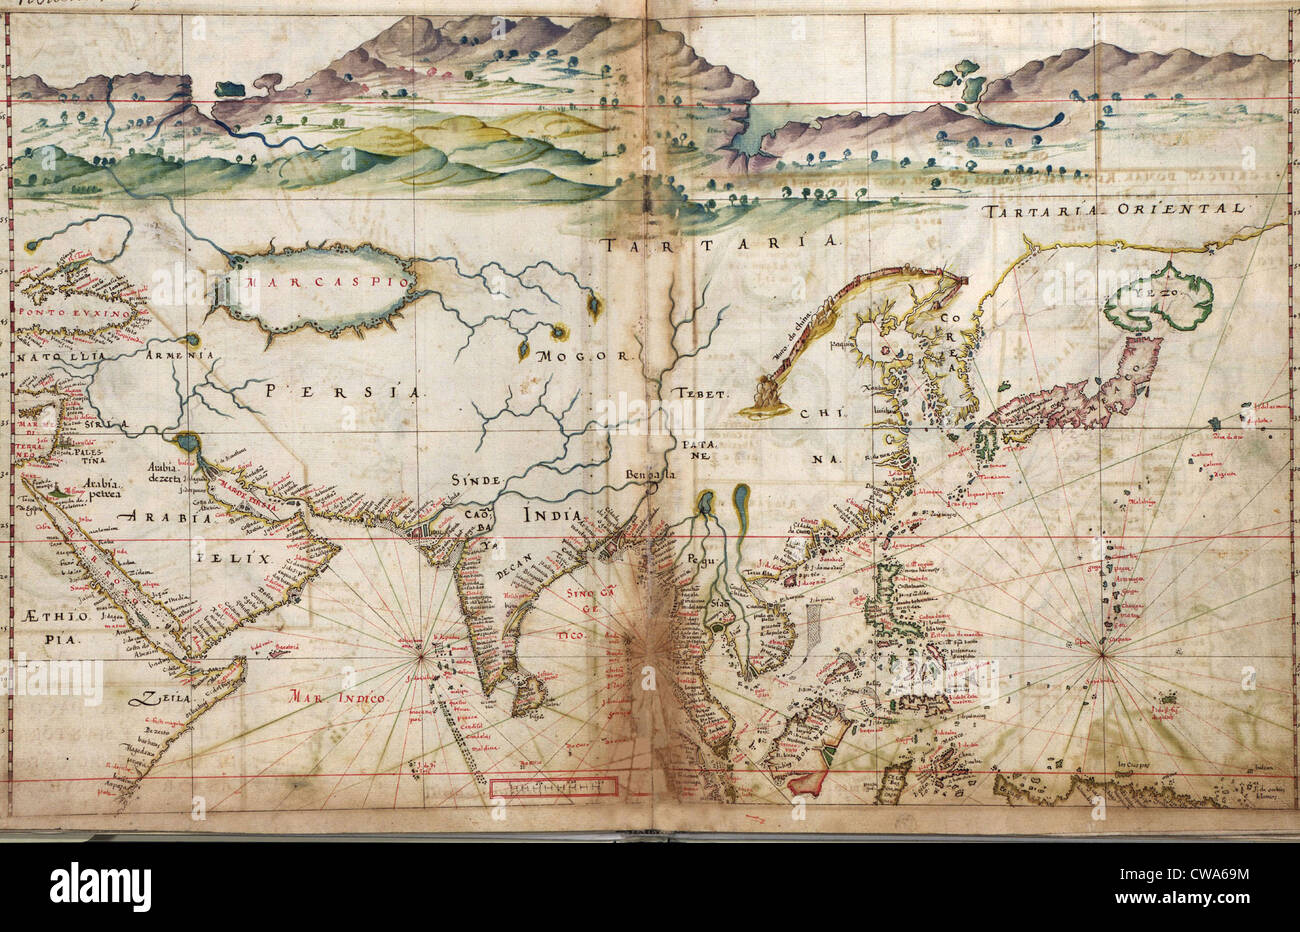 1630 Portugués mapas, mostrando los detalles de fortalezas y ciudades costeras de Asia, reunidos por un siglo de las exploraciones portuguesas Foto de stock